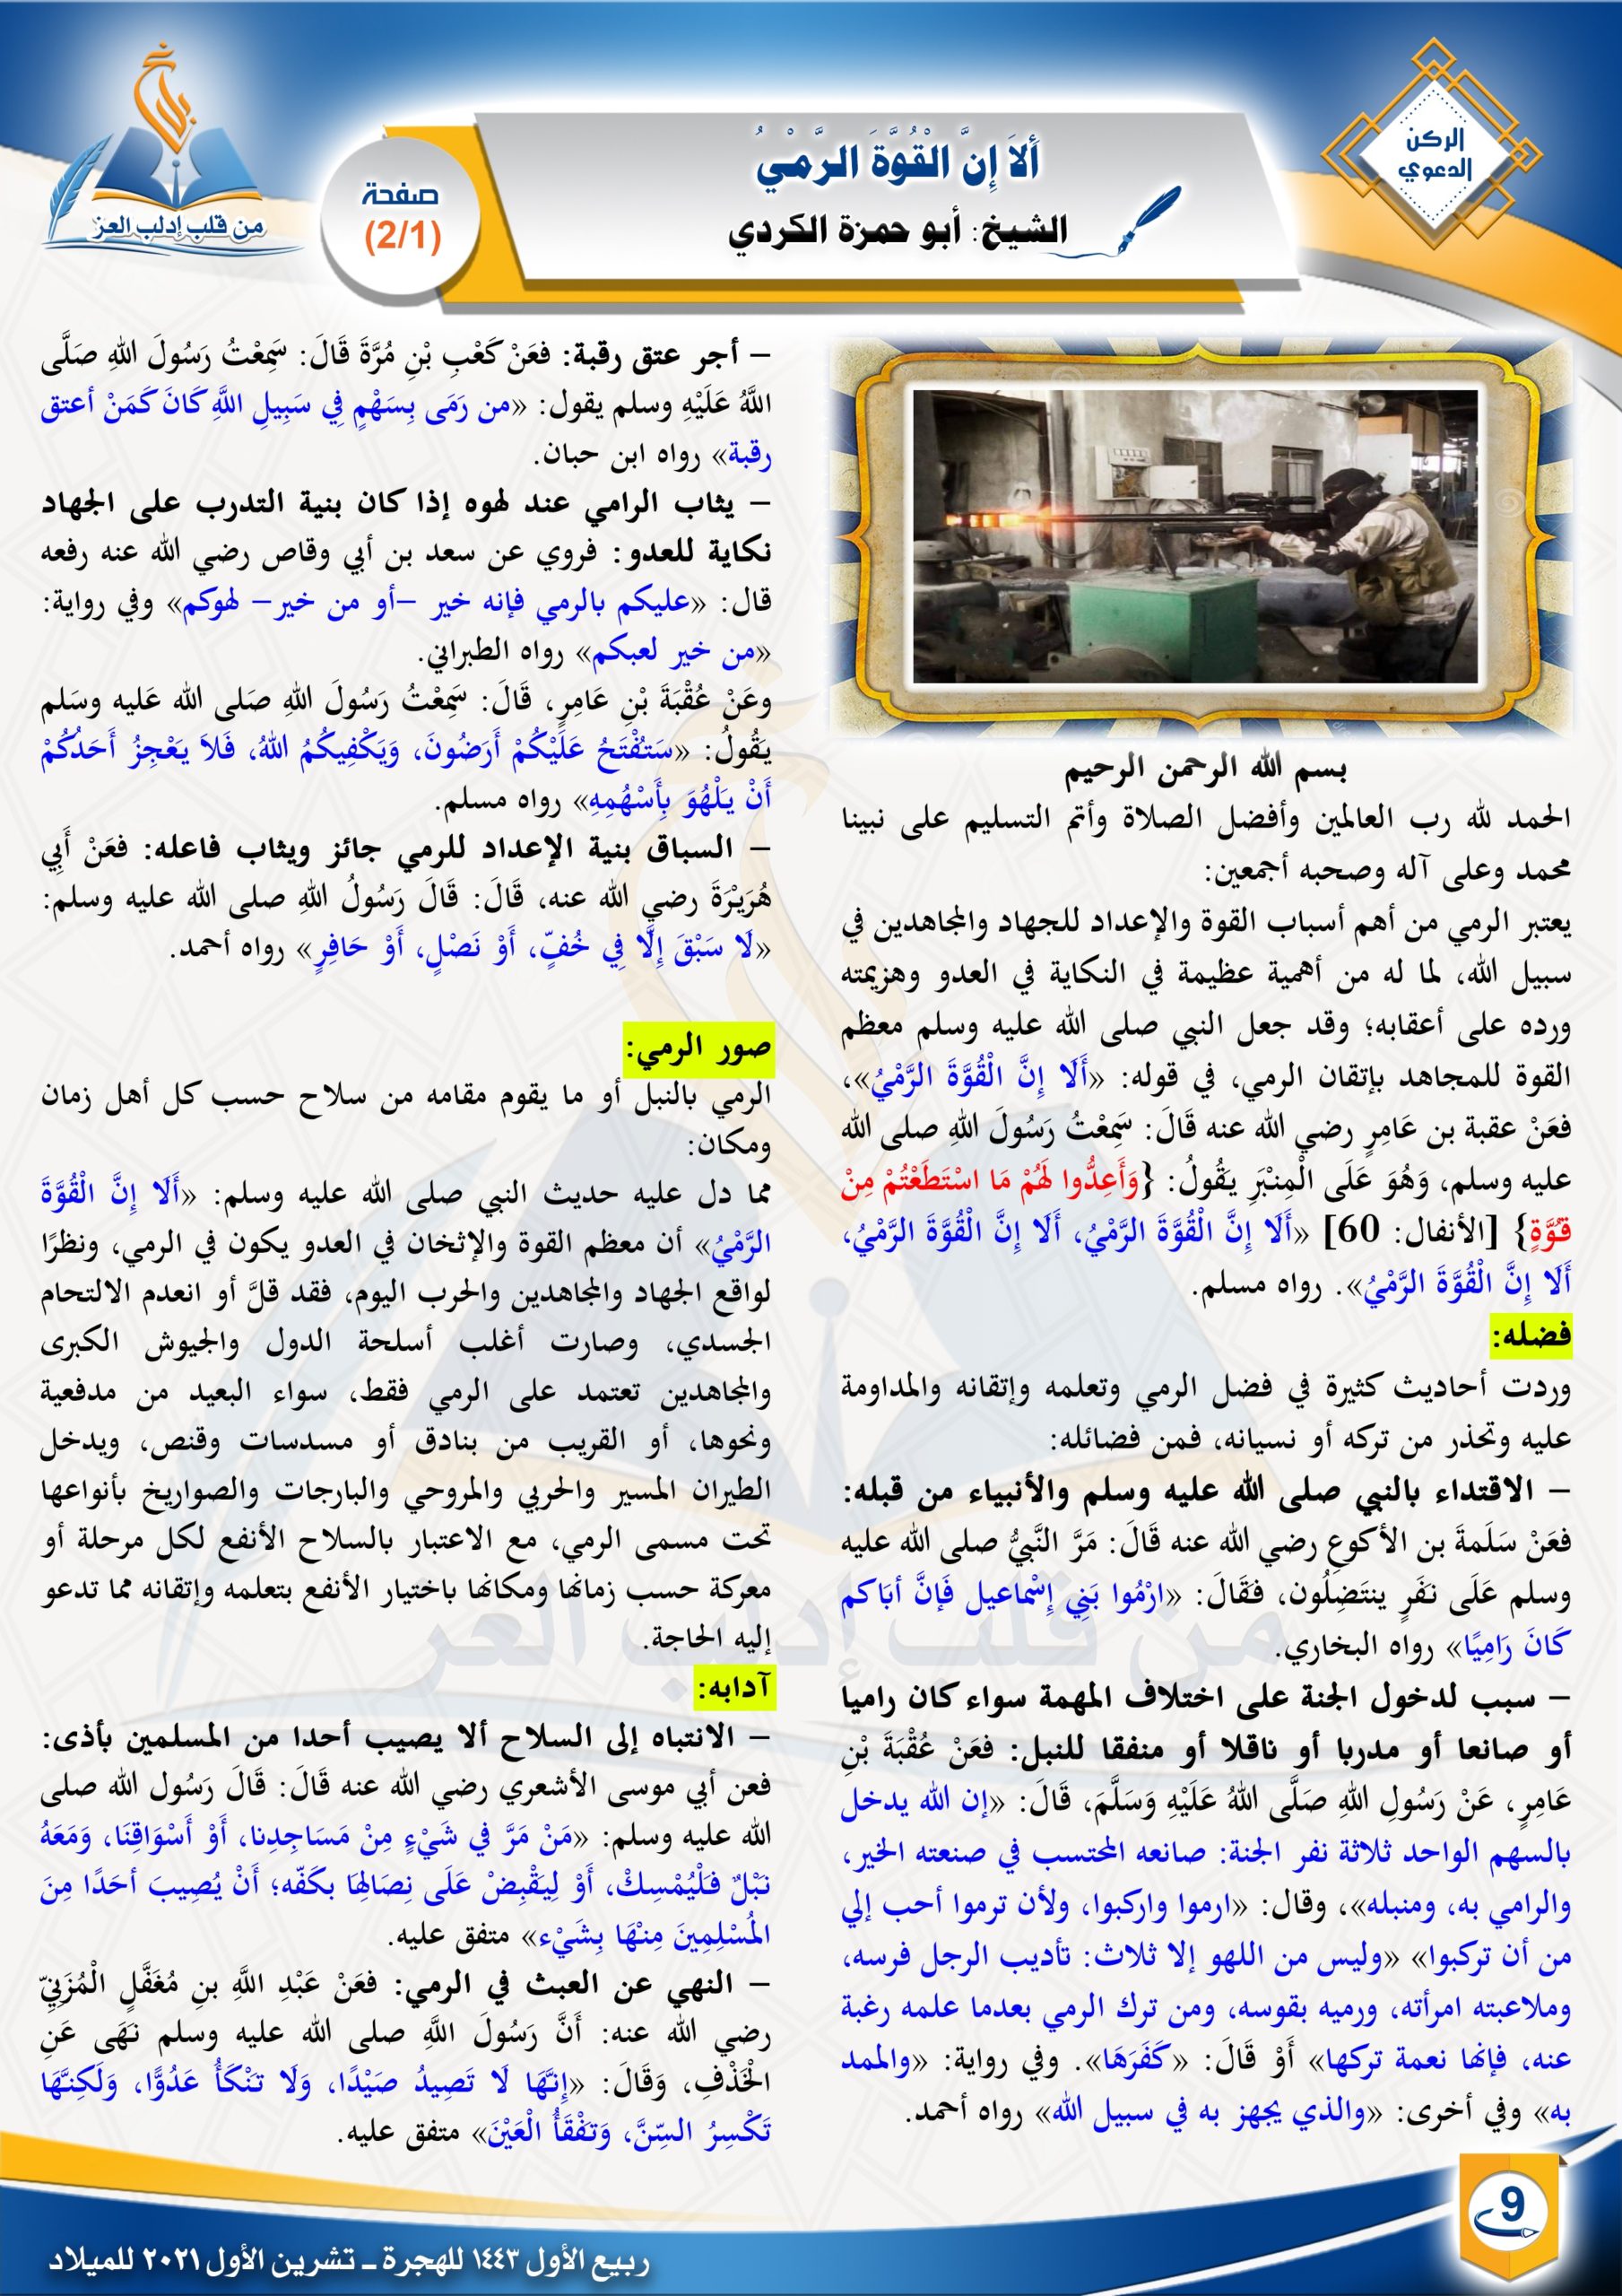  ألا إن القوة الرمي - الركن الدعوي - مجلة بلاغ العدد ٢٩ ربيع الأول ١٤٤٣ هـ - الشيخ أبو حمزة الكردي